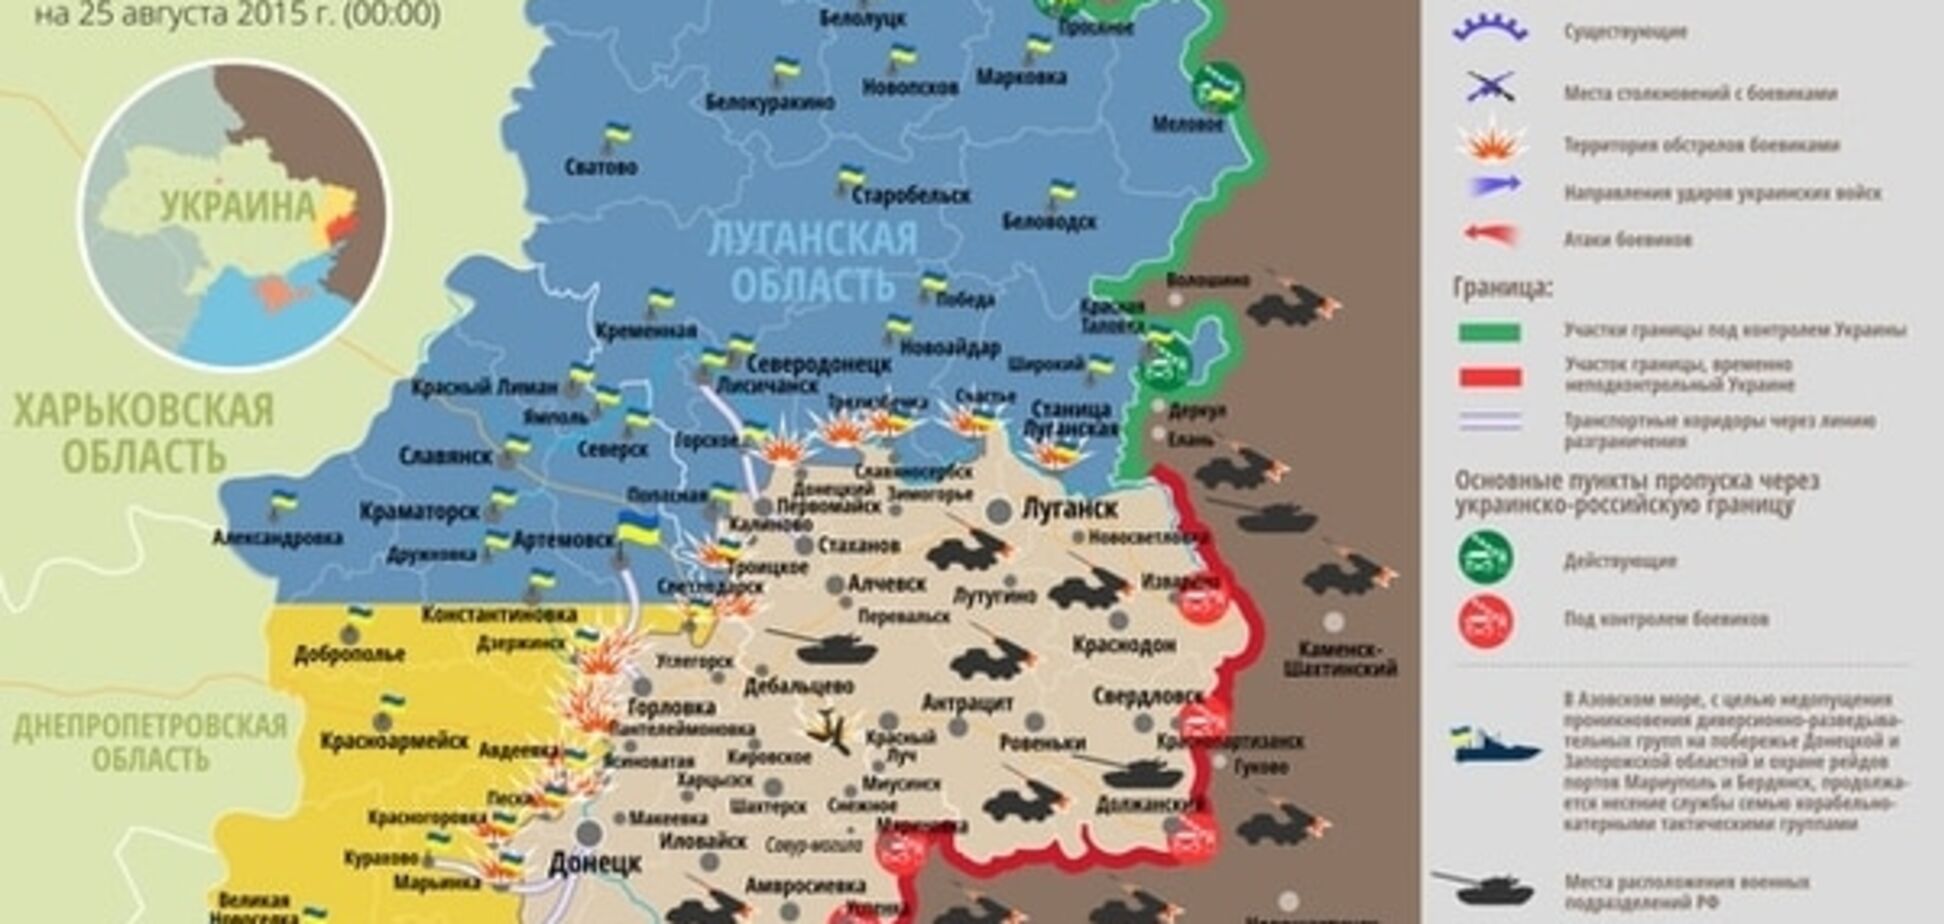 За прошедшие сутки на Донецком направлении было тихо, на Мариупольском - 'жарко': опубликована карта АТО